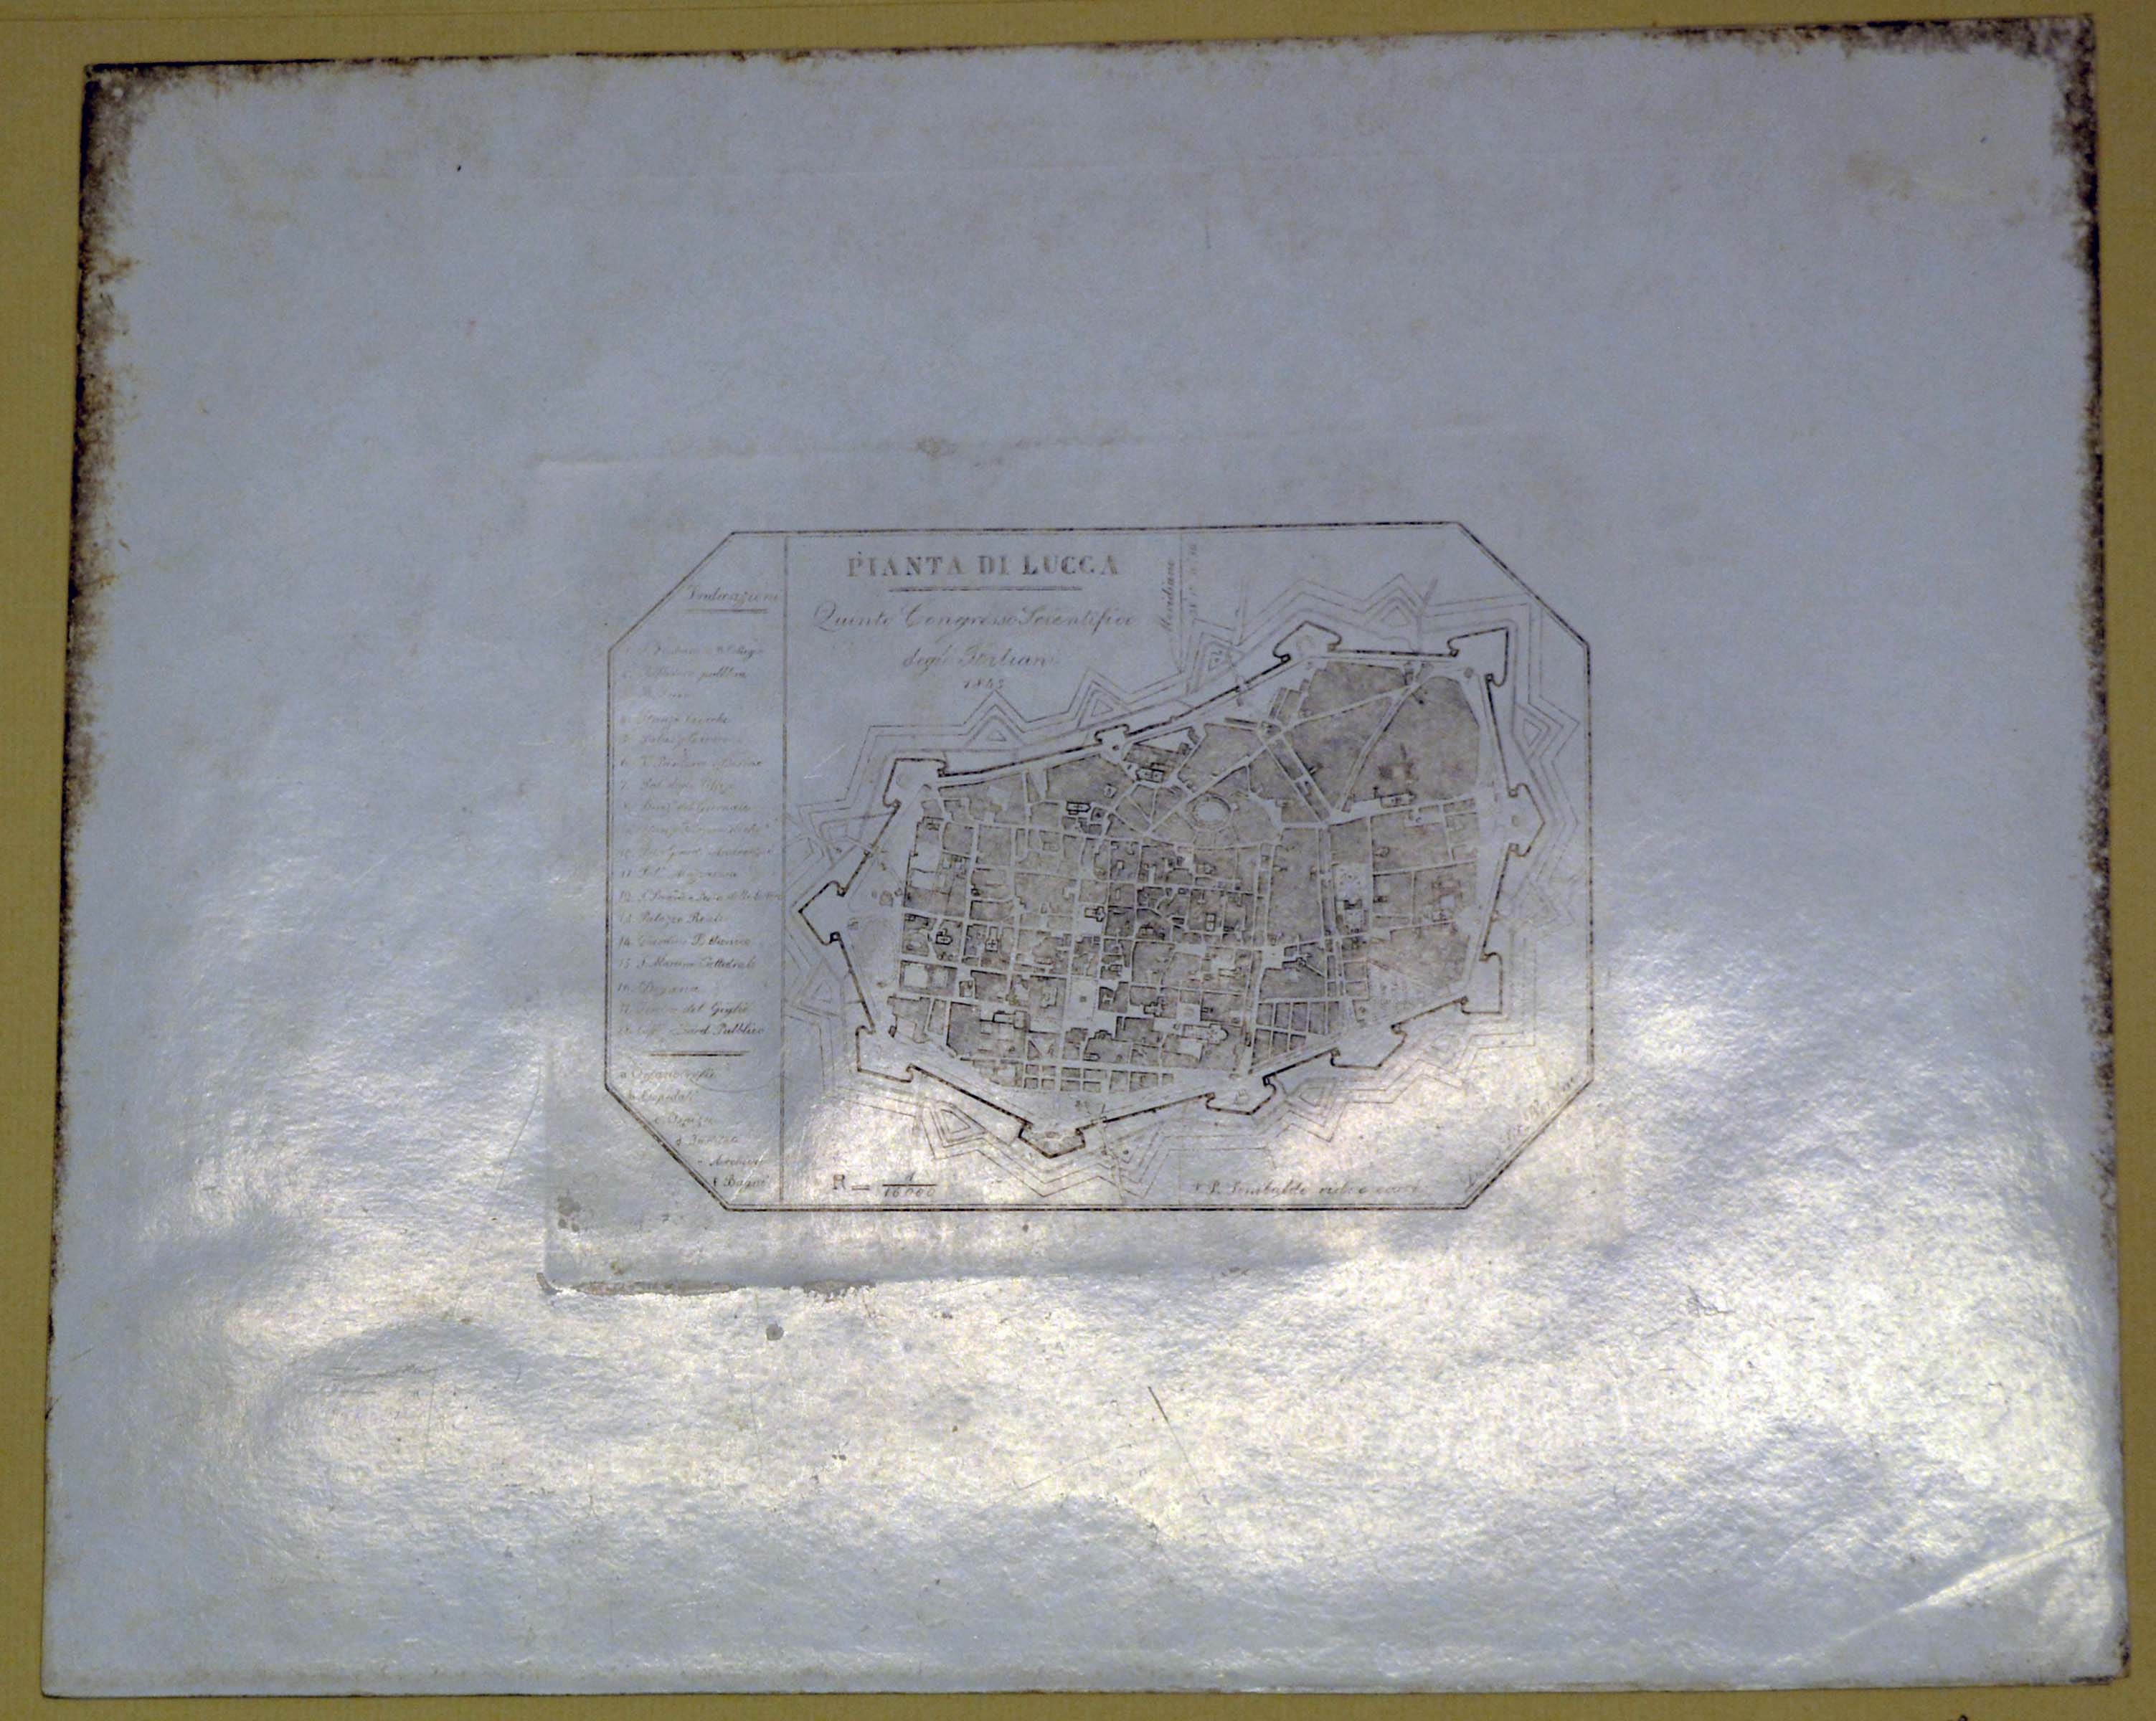 pianta topografica di Lucca realizzata per il Quinto Congresso Scientifico degli Italiani del 1843 (stampa smarginata) di Sinibaldi P.P (secondo quarto sec. XIX)